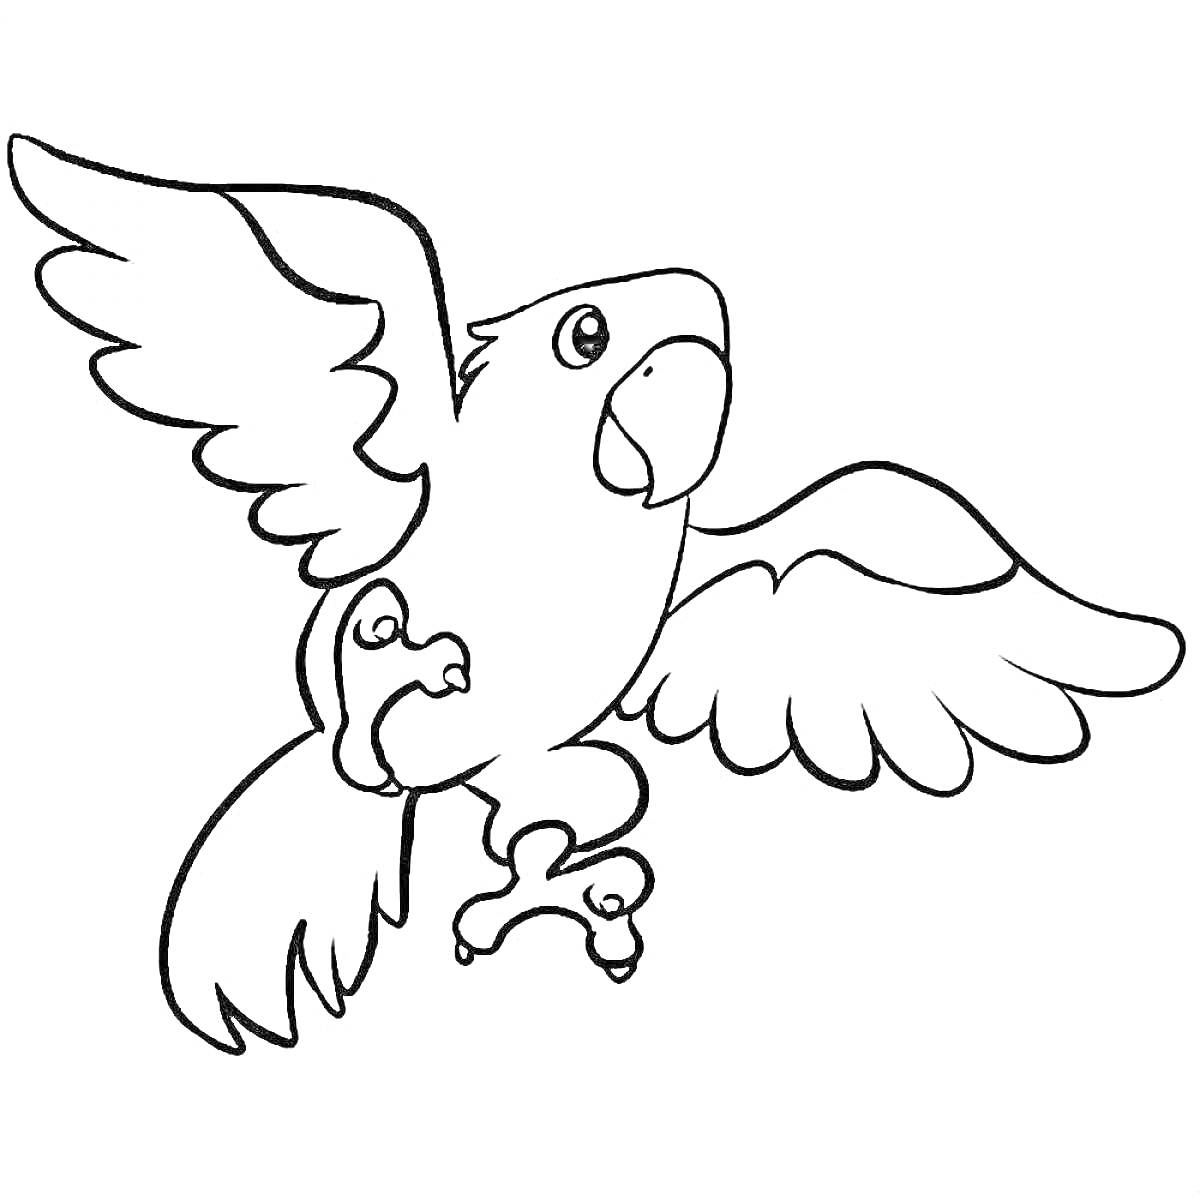 Раскраска Летящий попугай с расправленными крыльями в раскраске для детей